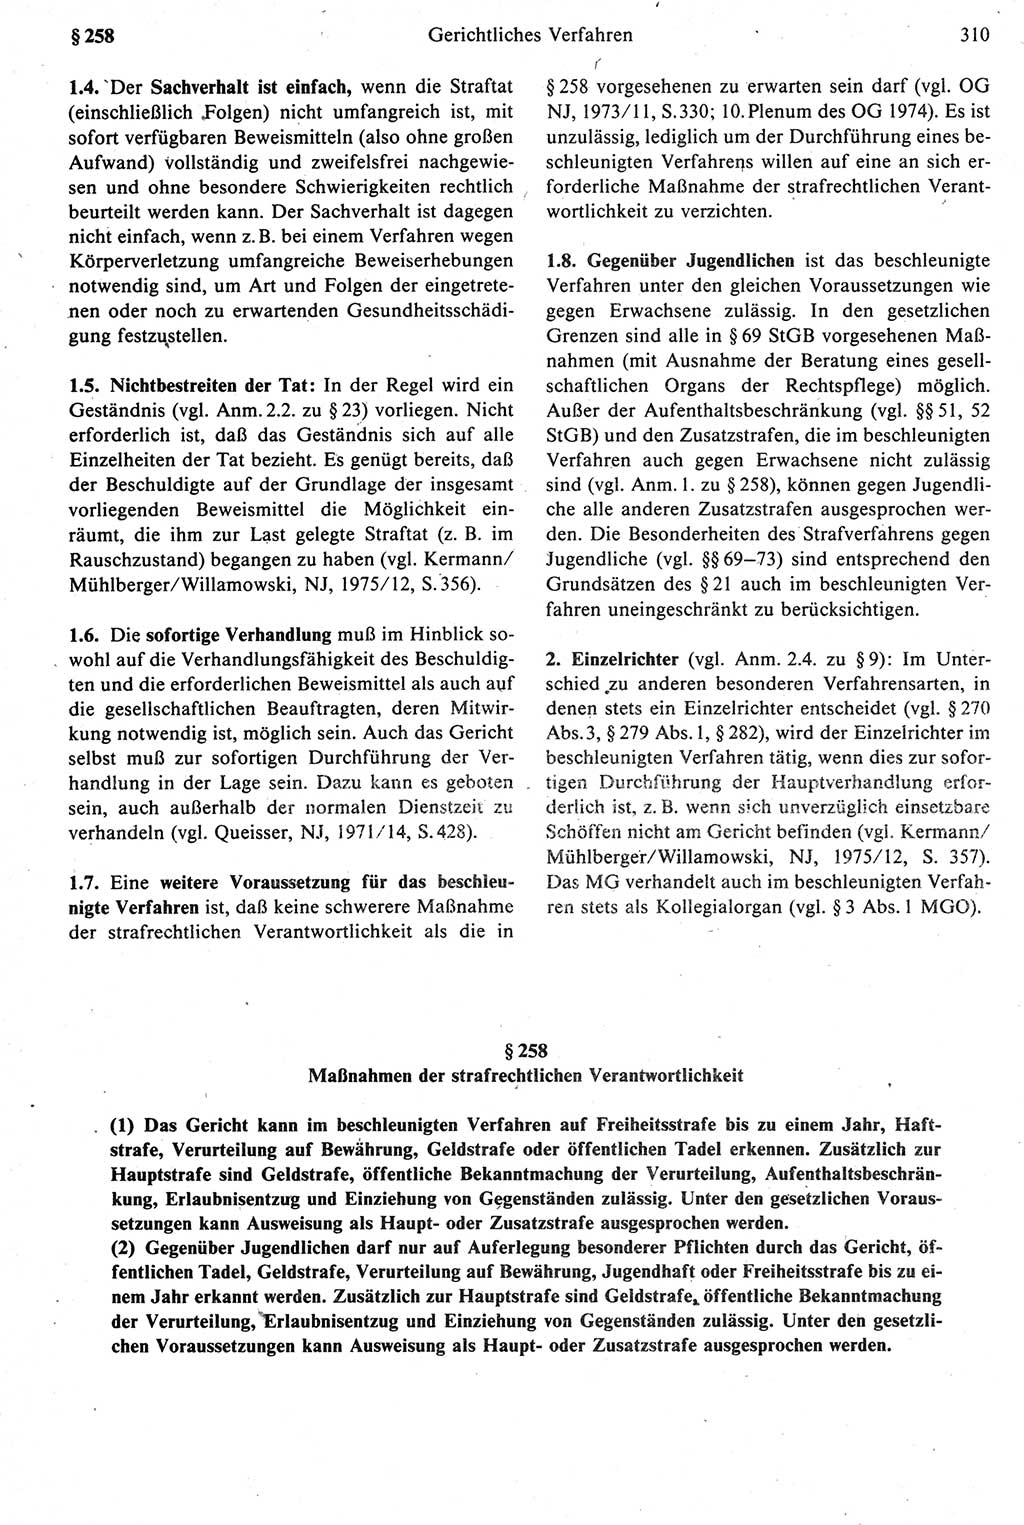 Strafprozeßrecht der DDR [Deutsche Demokratische Republik], Kommentar zur Strafprozeßordnung (StPO) 1987, Seite 310 (Strafprozeßr. DDR Komm. StPO 1987, S. 310)